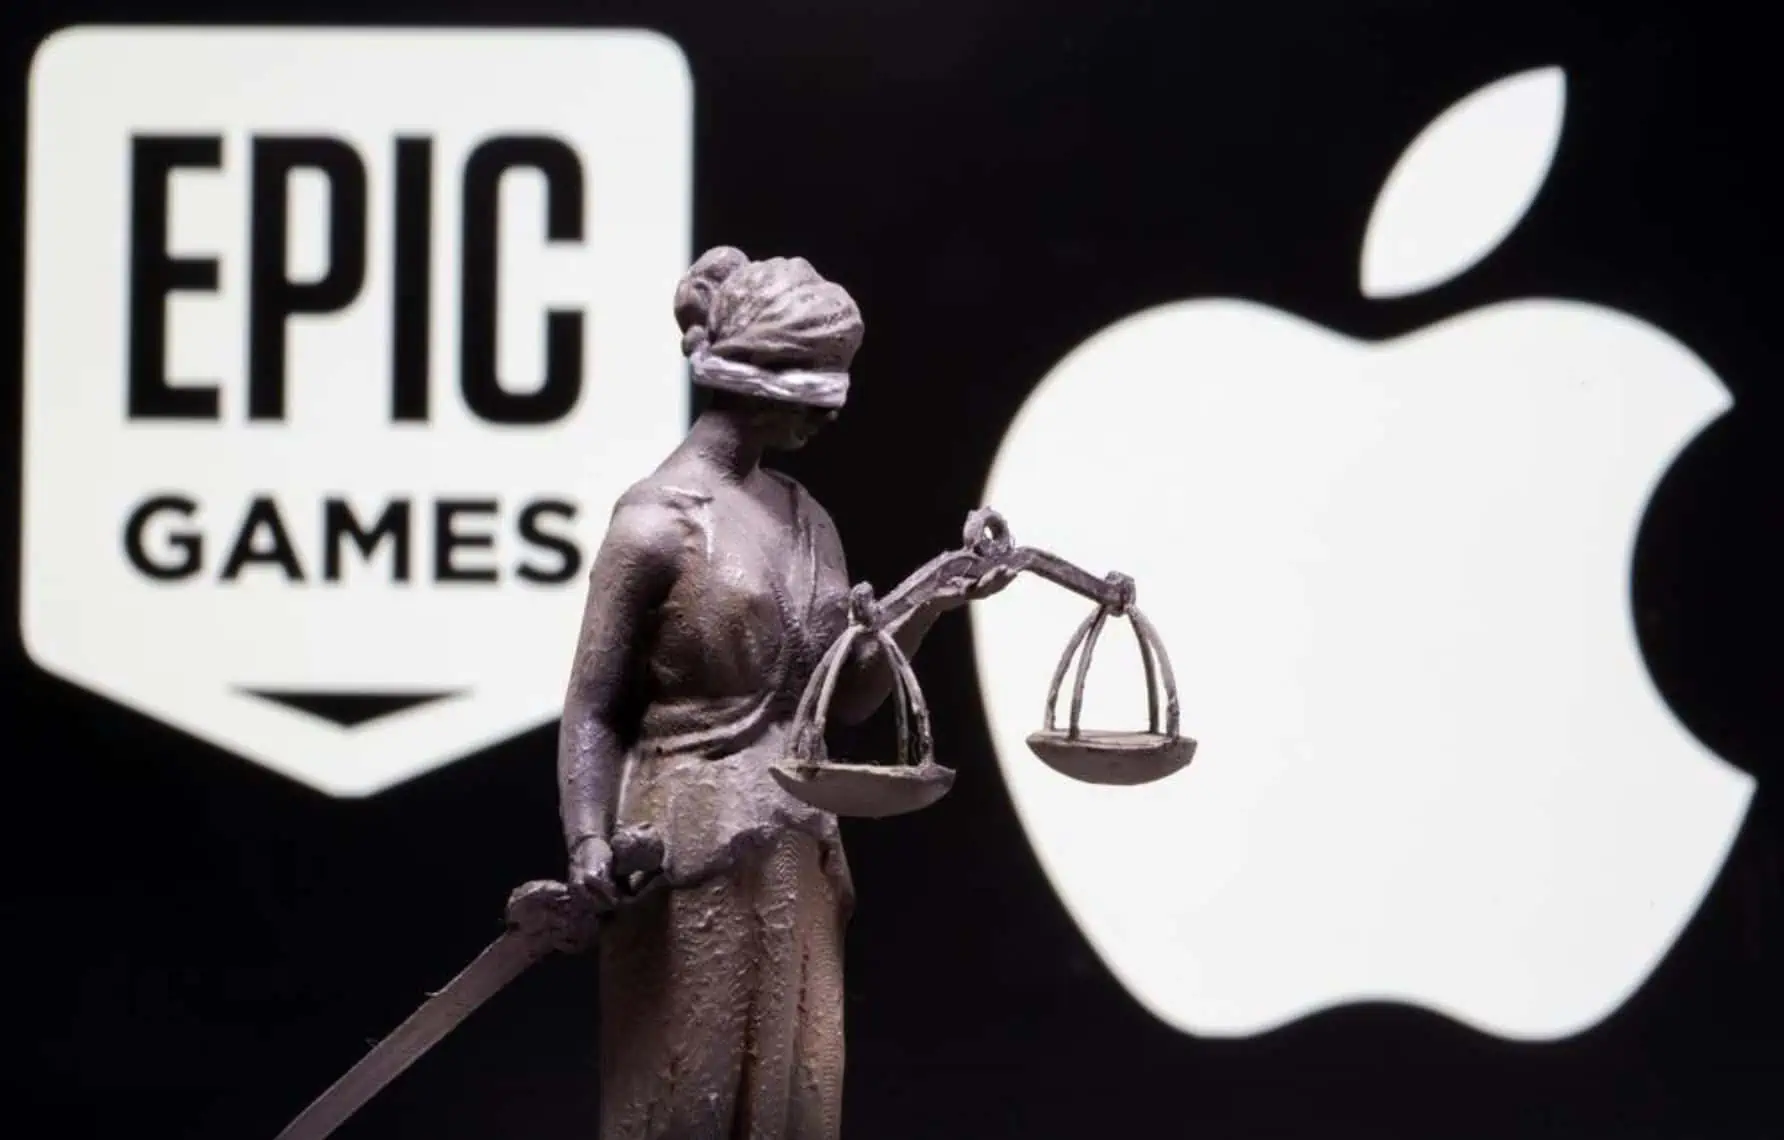 Apple impede que jogadores entrem no Fortnite com contas da